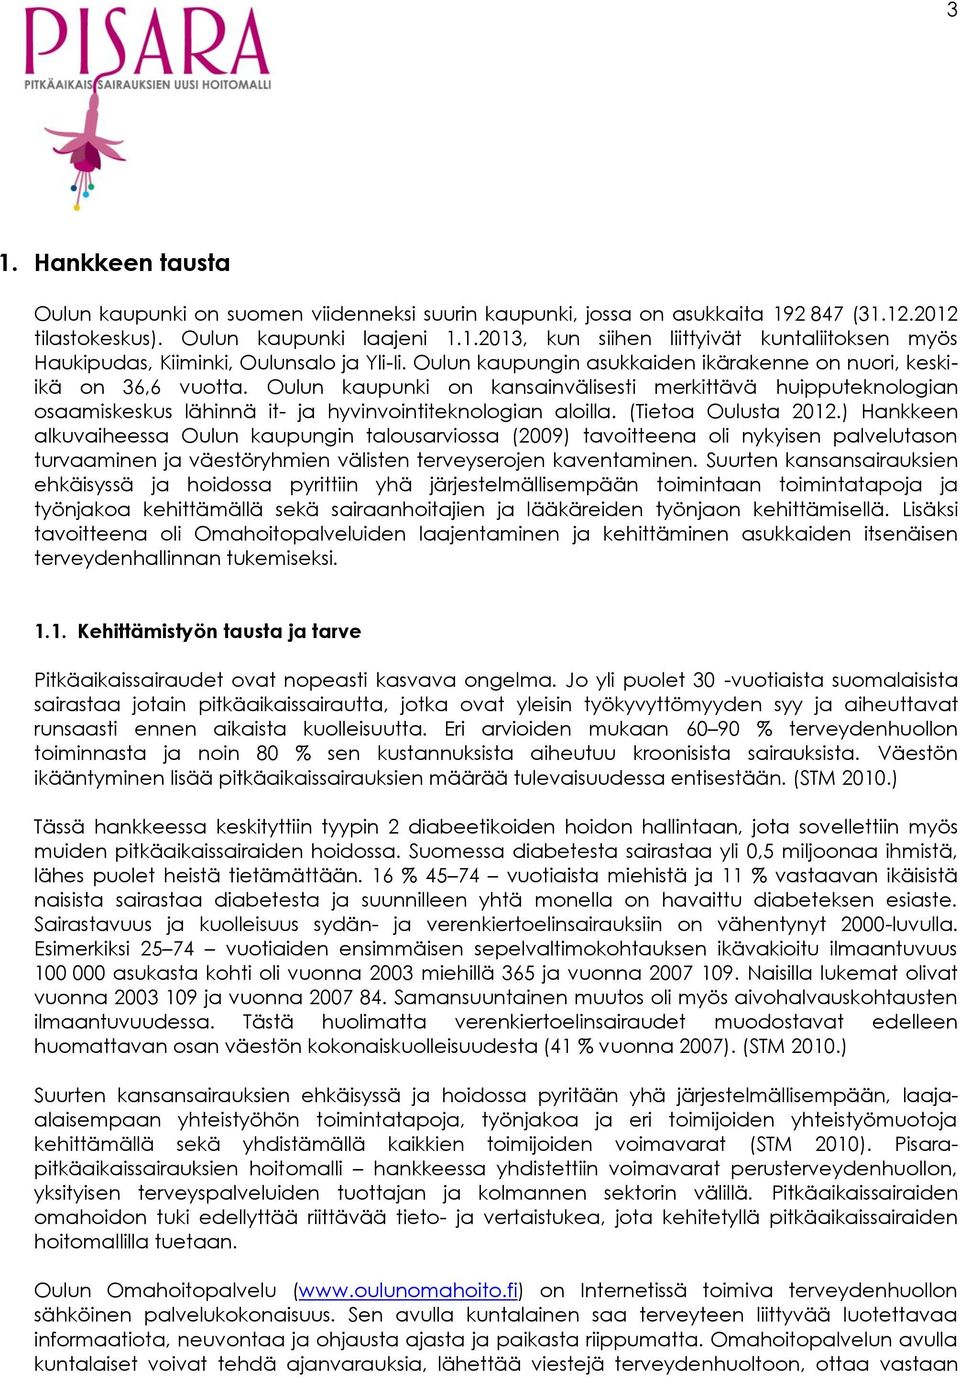 (Tietoa Oulusta 2012.) Hankkeen alkuvaiheessa Oulun kaupungin talousarviossa (2009) tavoitteena oli nykyisen palvelutason turvaaminen ja väestöryhmien välisten terveyserojen kaventaminen.